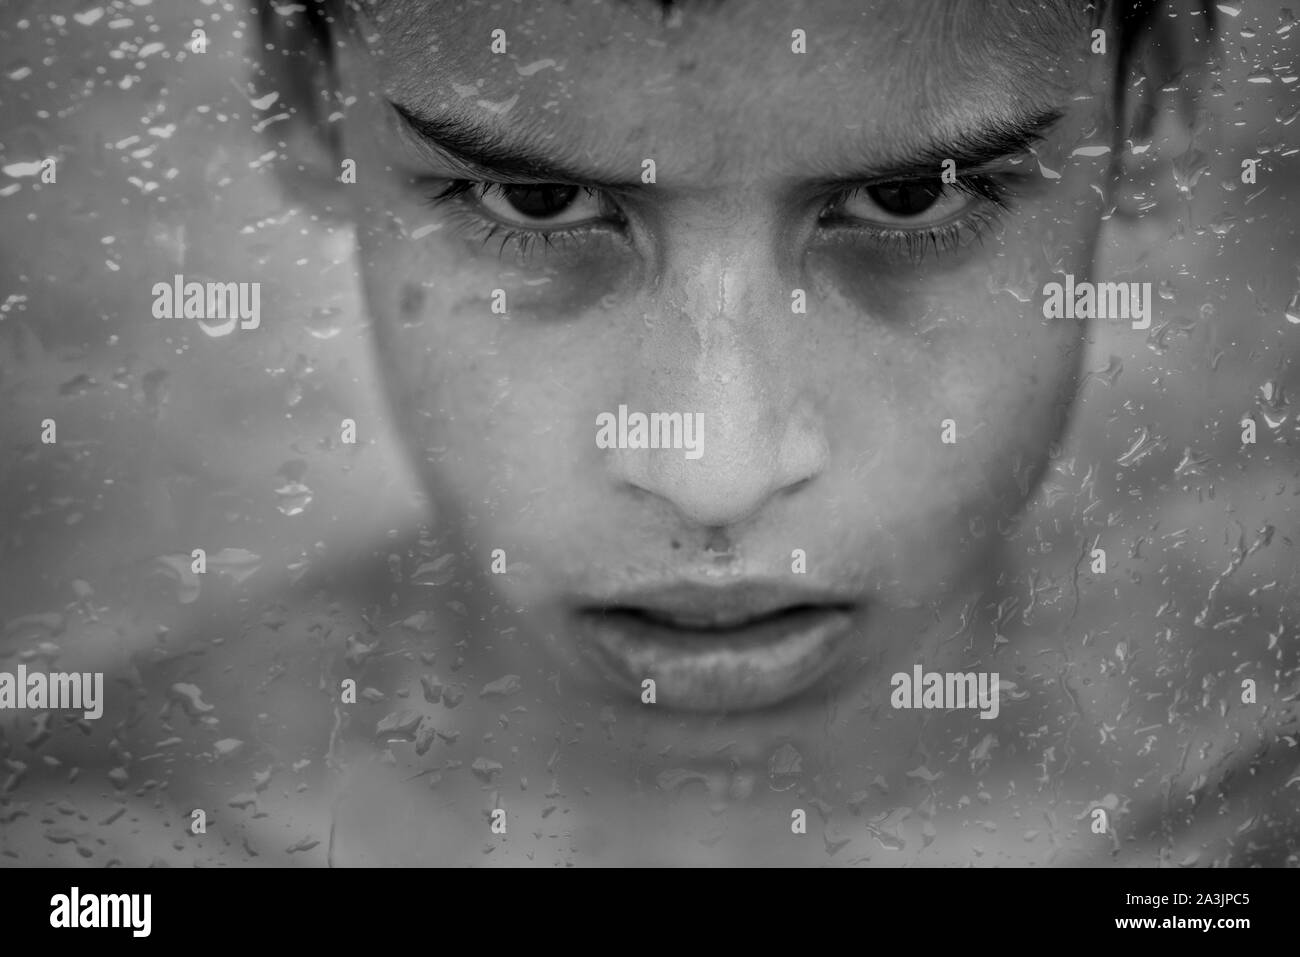 Jeune garçon brésilien derrière la fenêtre couverte de gouttes de pluie Banque D'Images